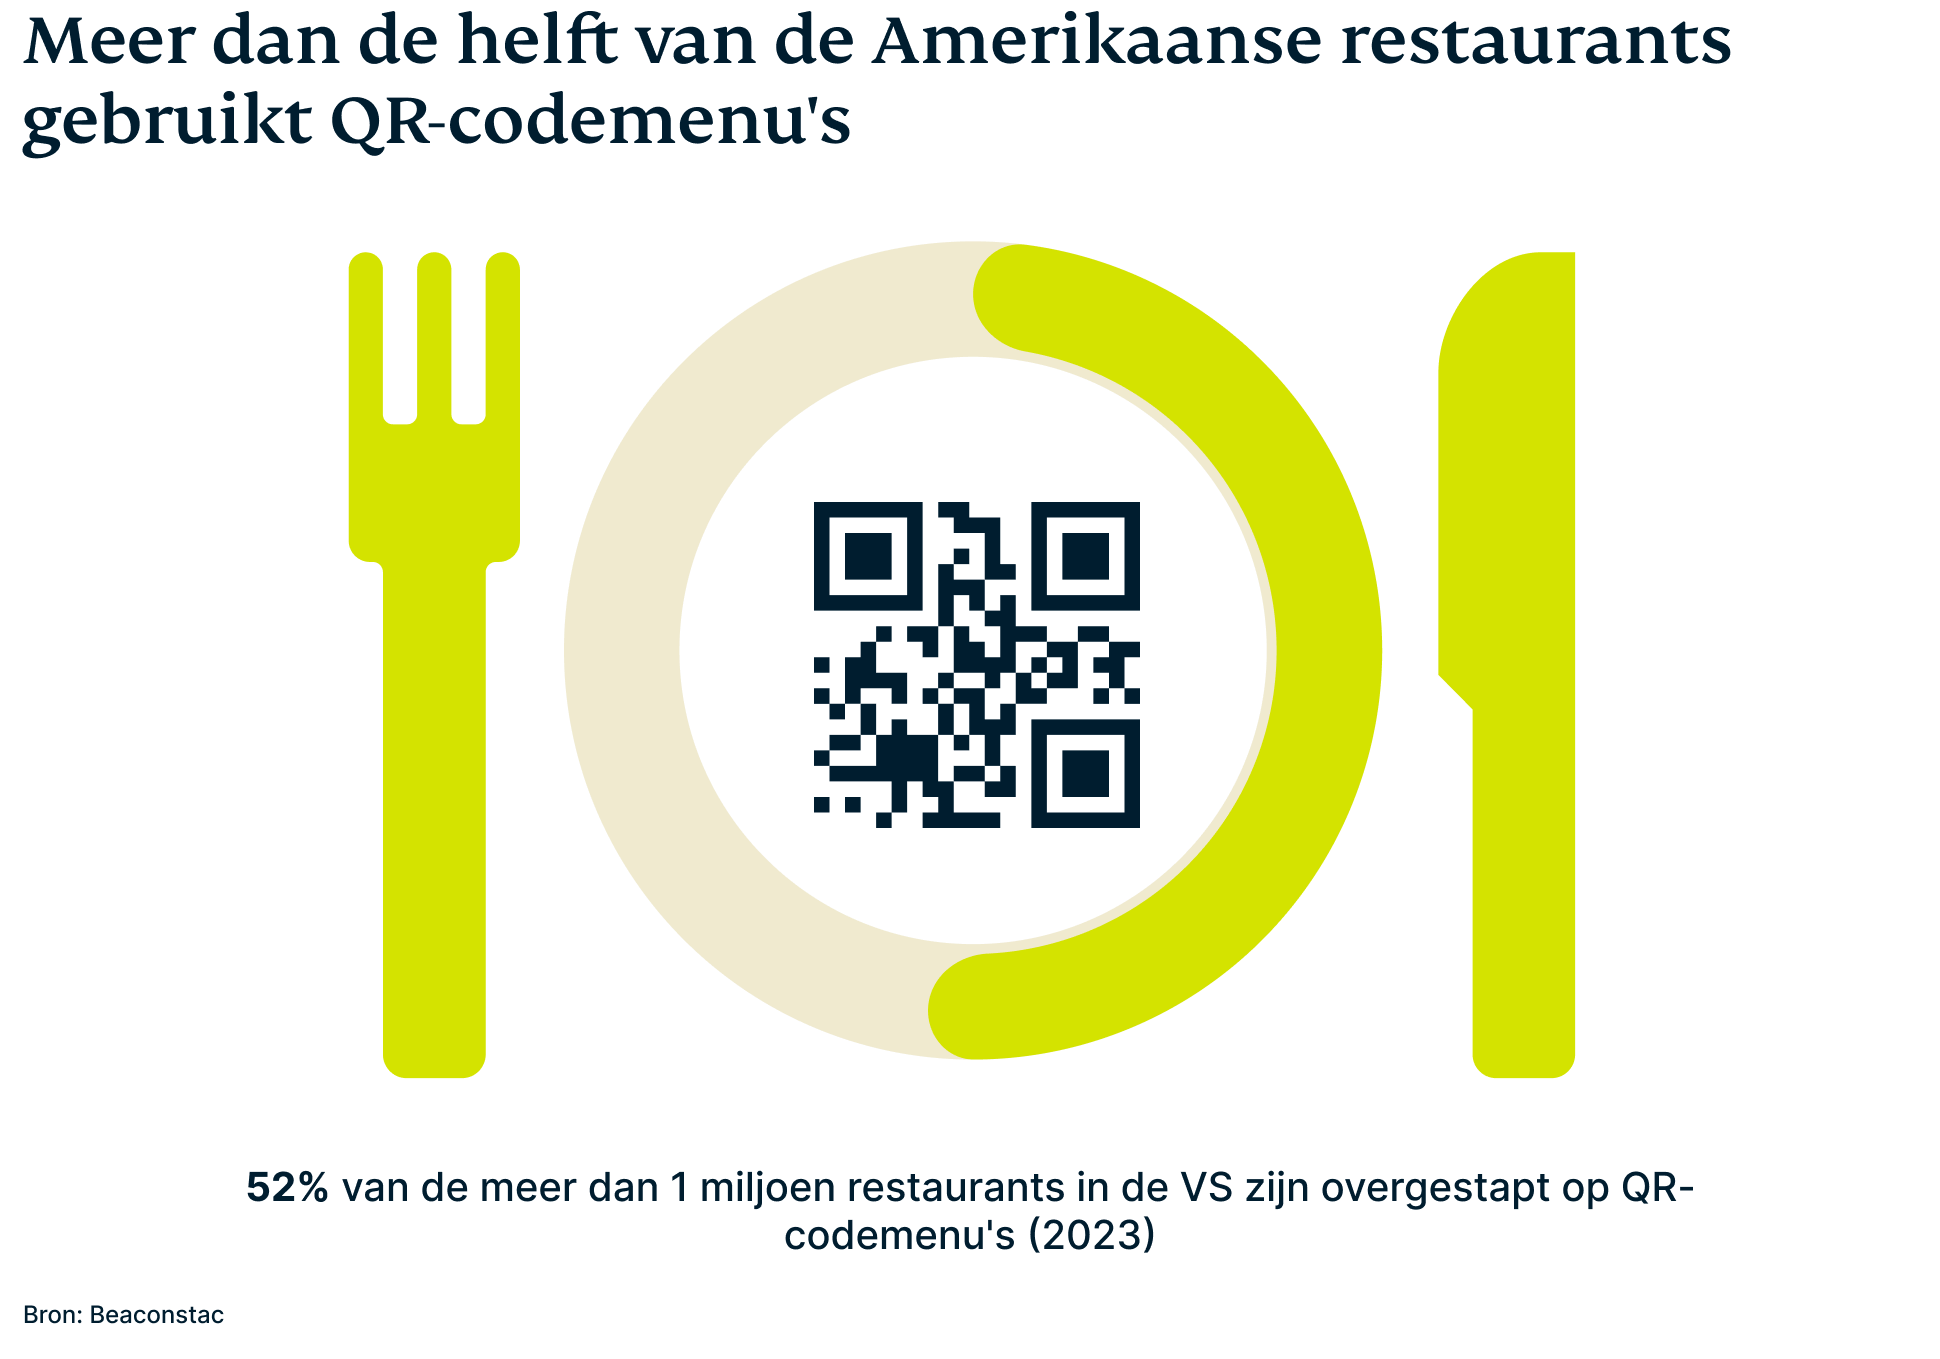 Meer dan de helft van de Amerikaanse restaurants gebruikt QR-code-menu's